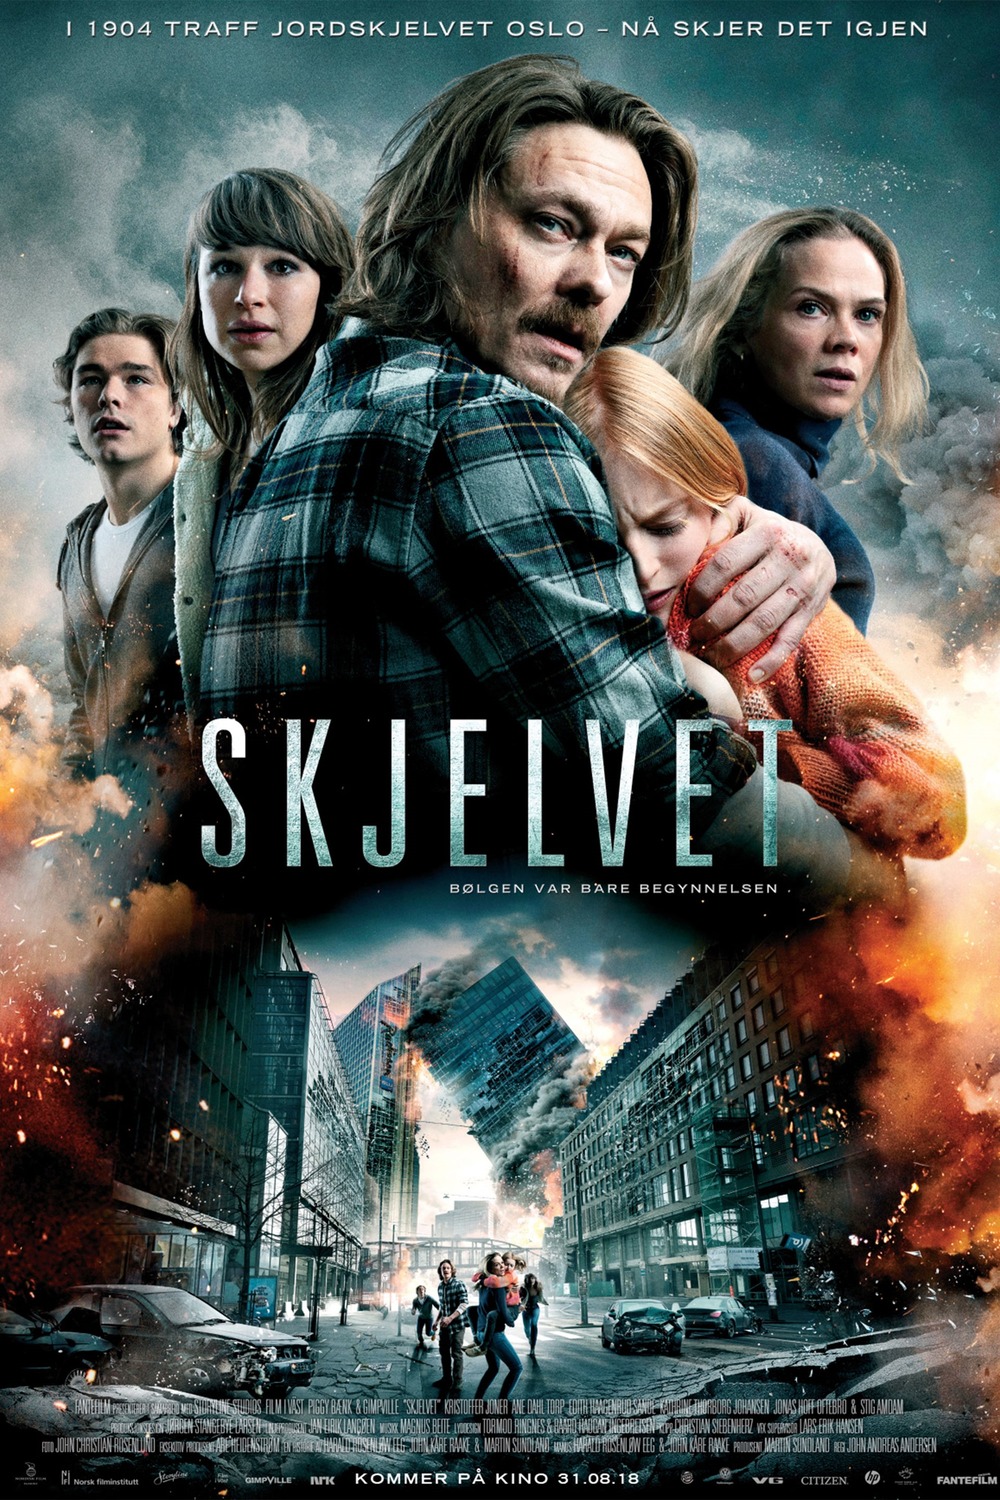 Extra Large Movie Poster Image for Skjelvet (#3 of 4)